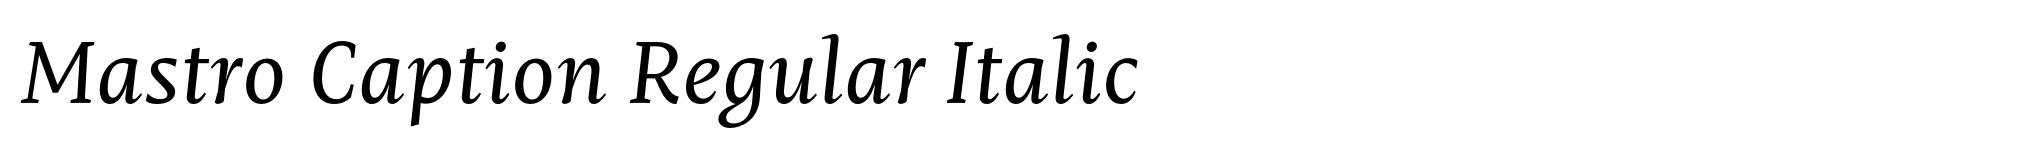 Mastro Caption Regular Italic image